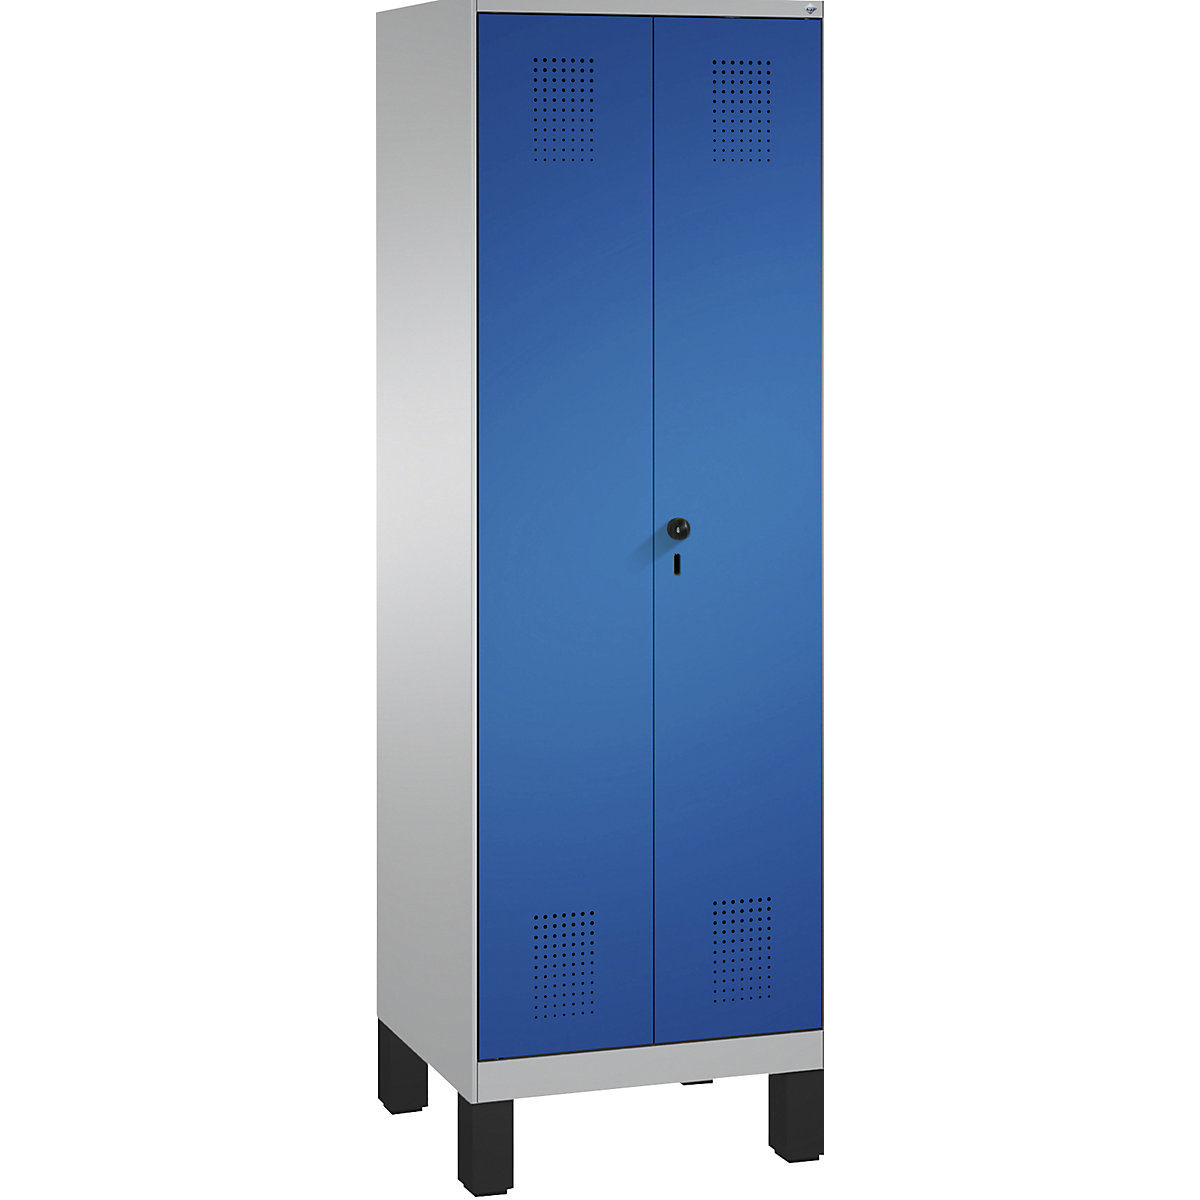 EVOLO takarítószer-/készüléktároló szekrény – C+P, rövidített válaszfal, 6 akasztó, rekeszek 2 x 300 mm, lábakkal, fehéralumínium / enciánkék-16